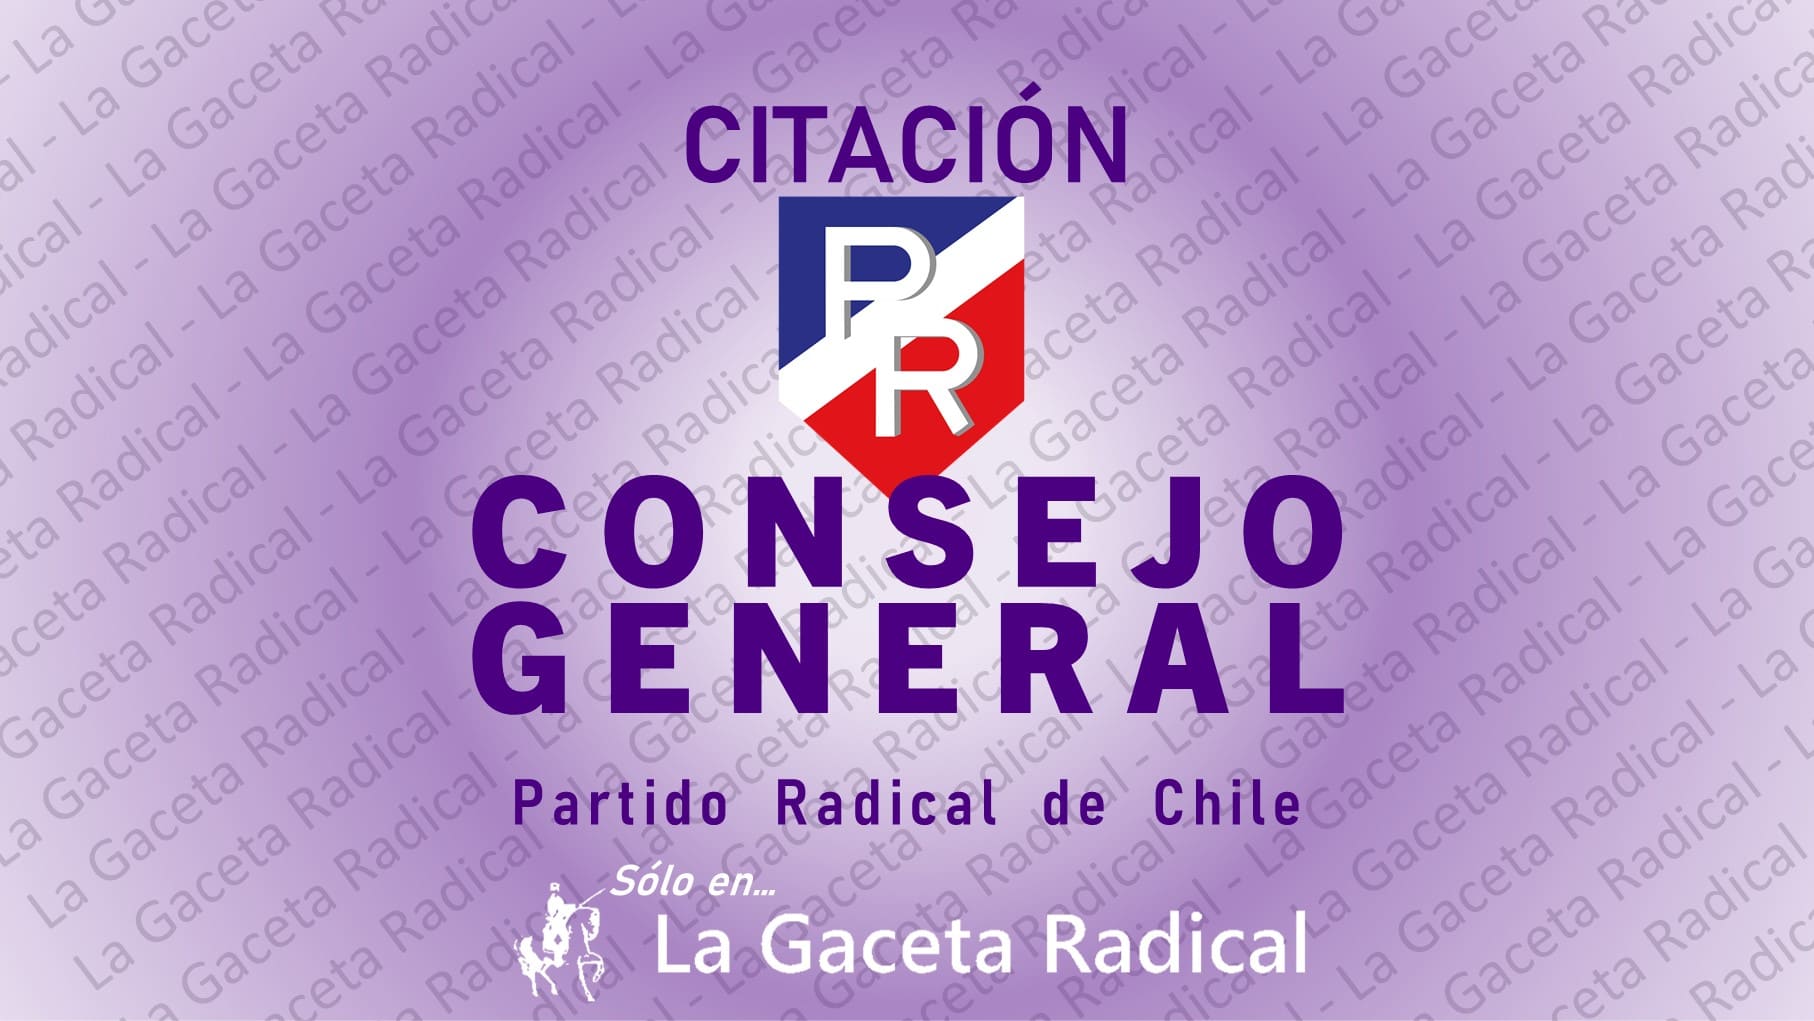 Citación Consejo General - Partido Radical de Chile - Sólo por La Gaceta Radical